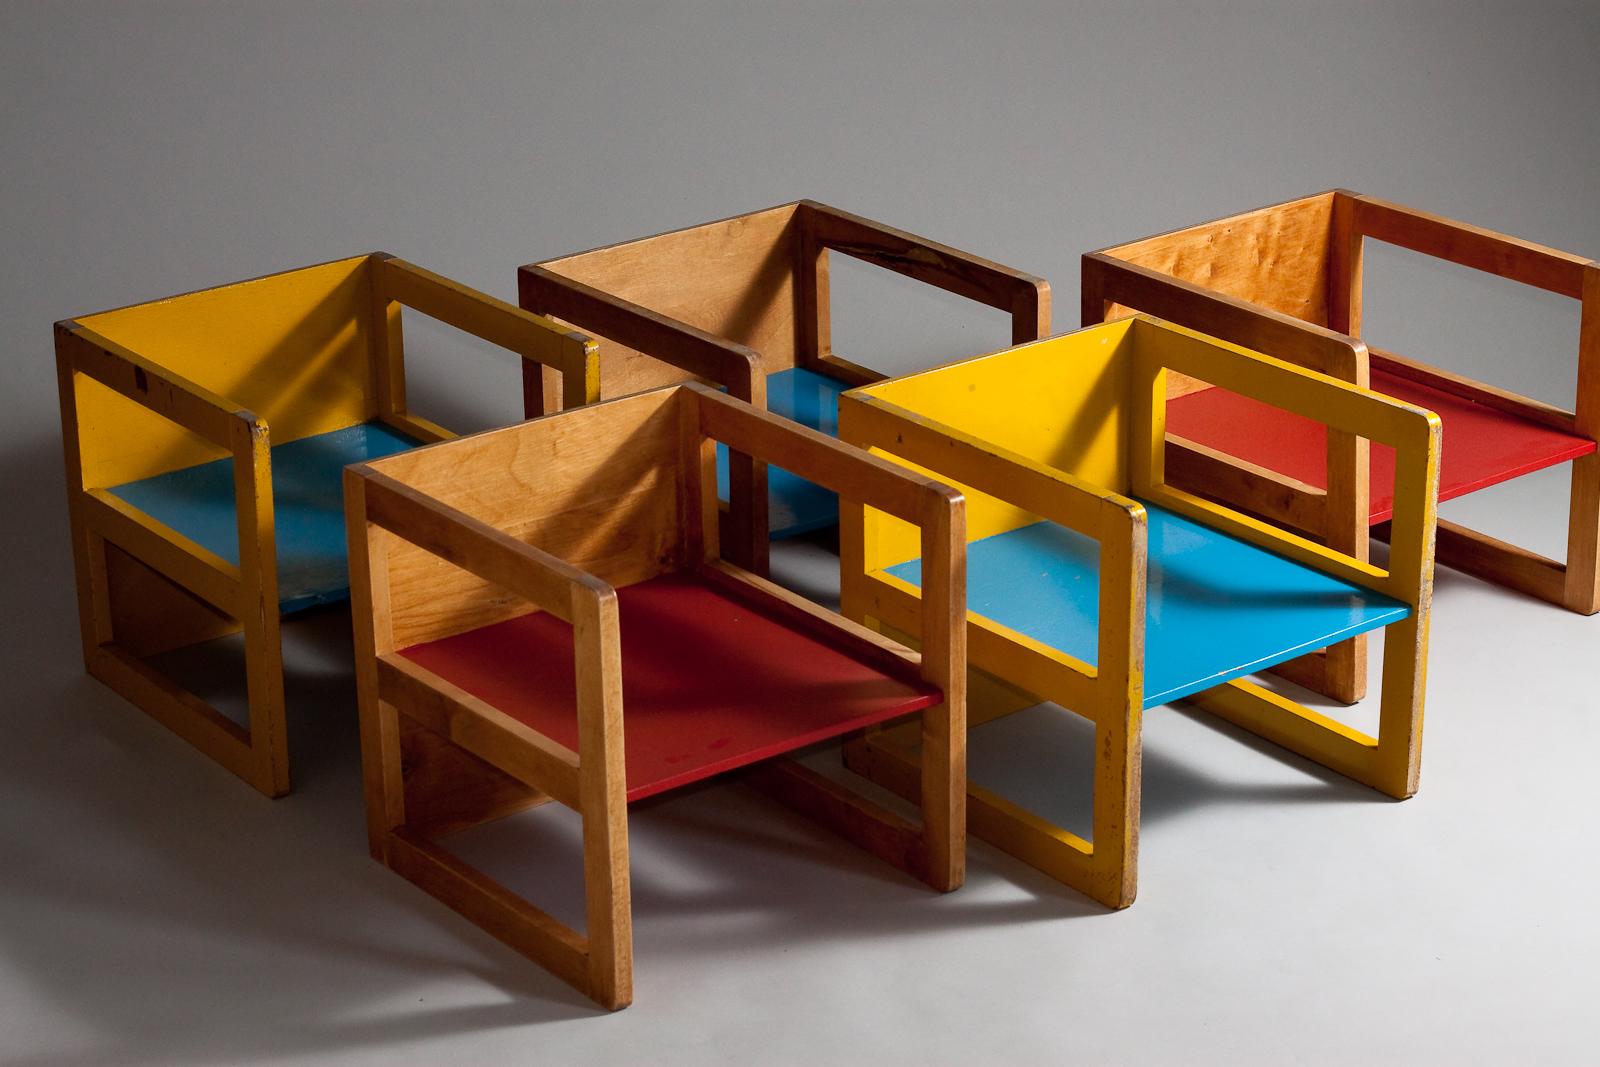 Ce rare ensemble de 5 chaises pour enfants, conçu par Aino Aalto dans les années 1940, présente un design classique et intemporel qui pourrait également être utilisé comme table. Avec leur design d'inspiration Montessori, ces chaises Aino Aalto sont